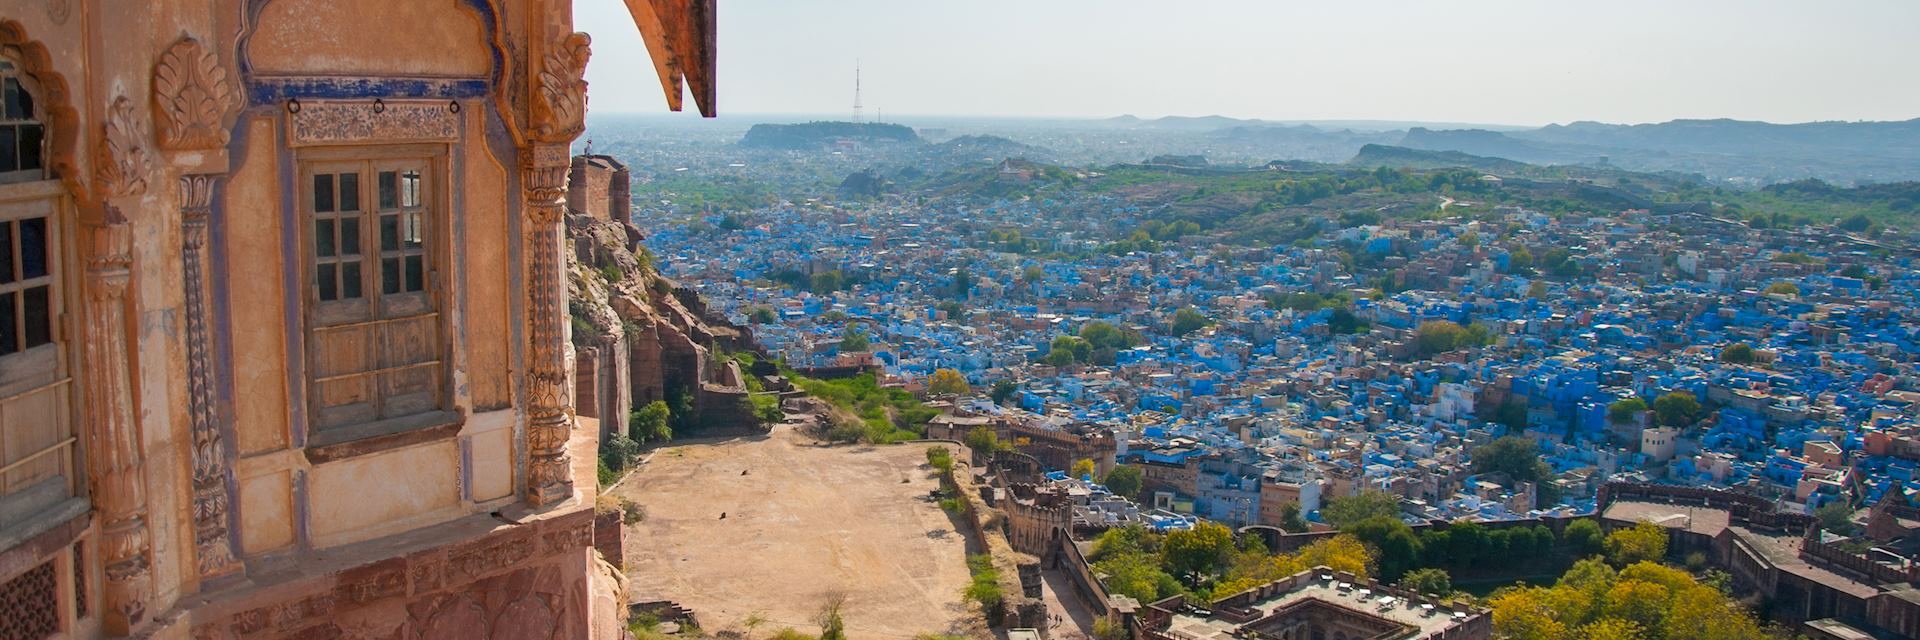 Jodhpur viewed from Mehrangarh Fort, India